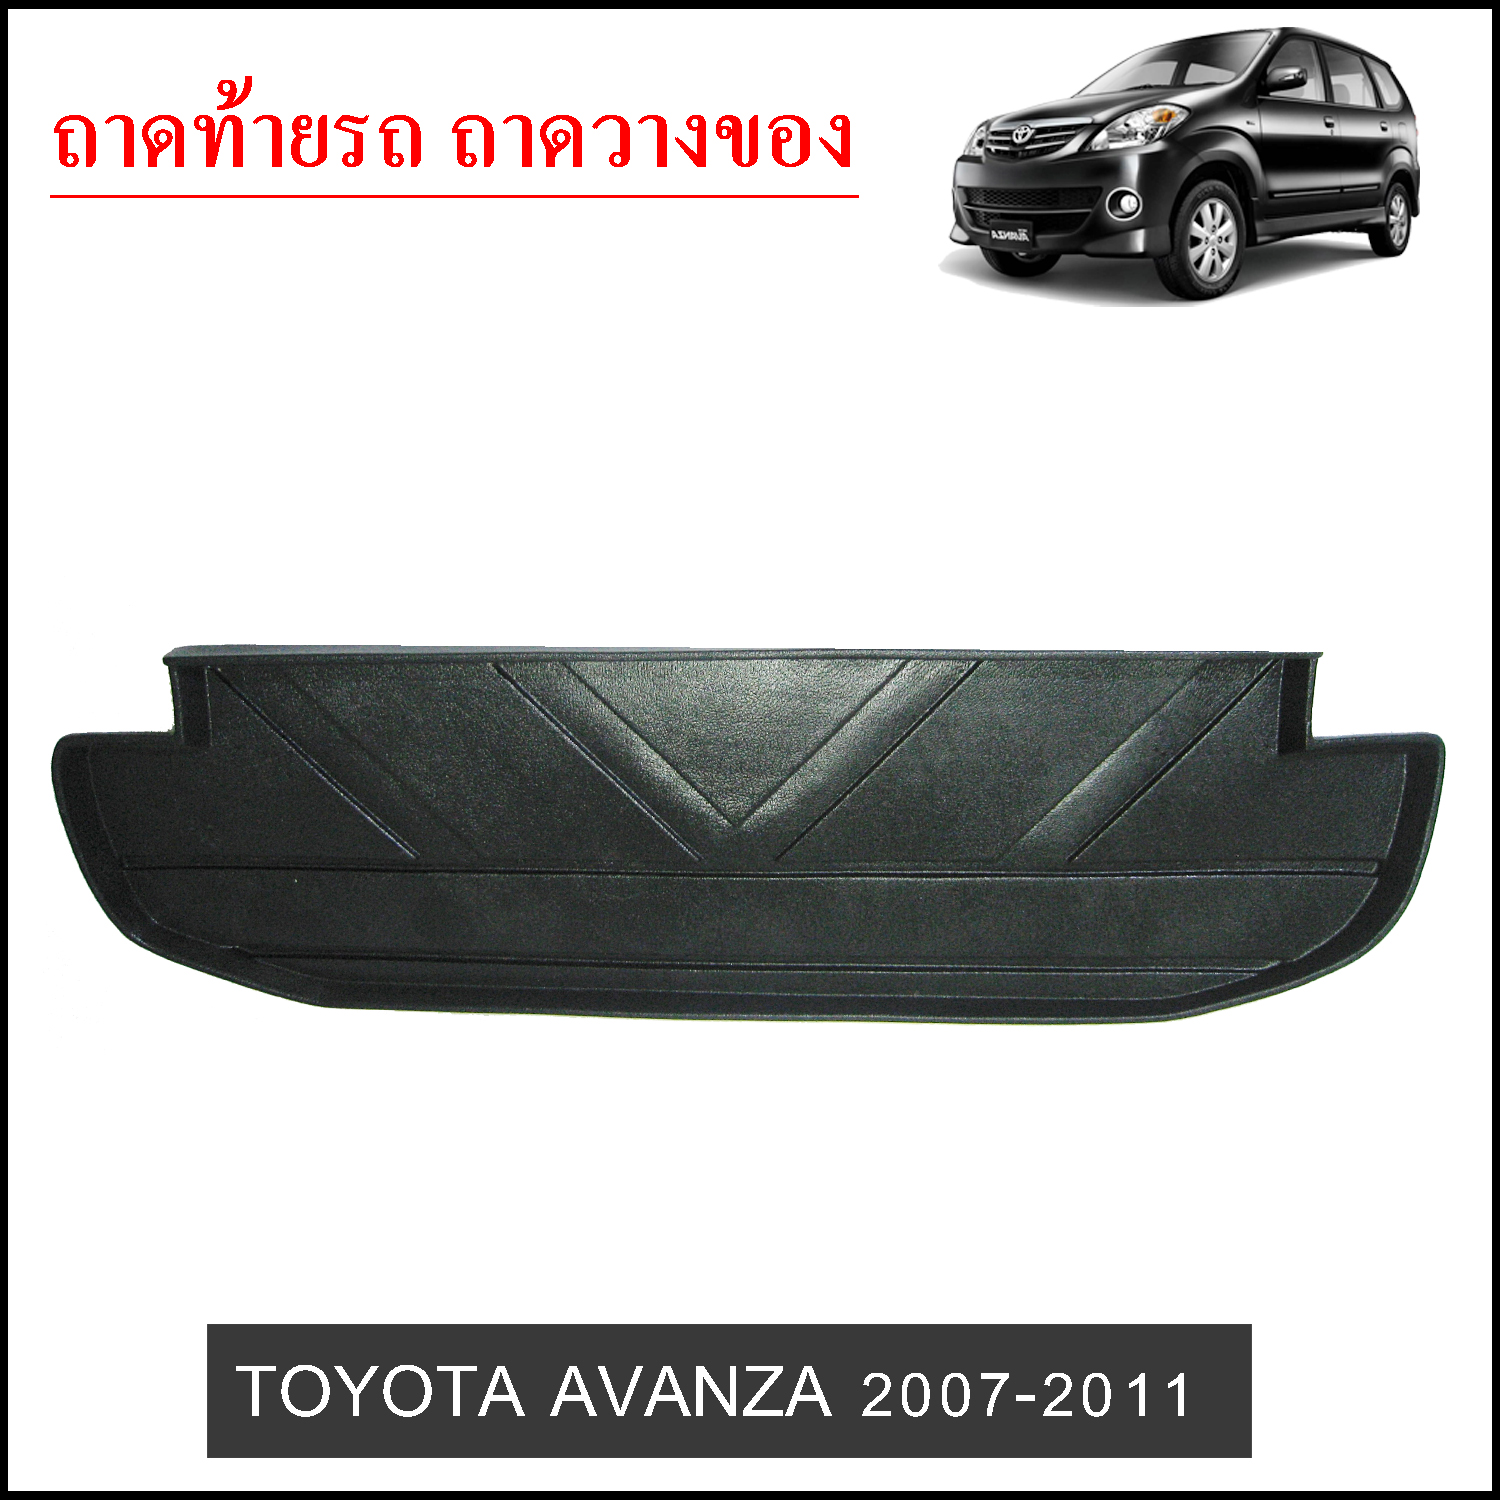 ถาดท้ายวางของ Toyota Avanza 2007-2011